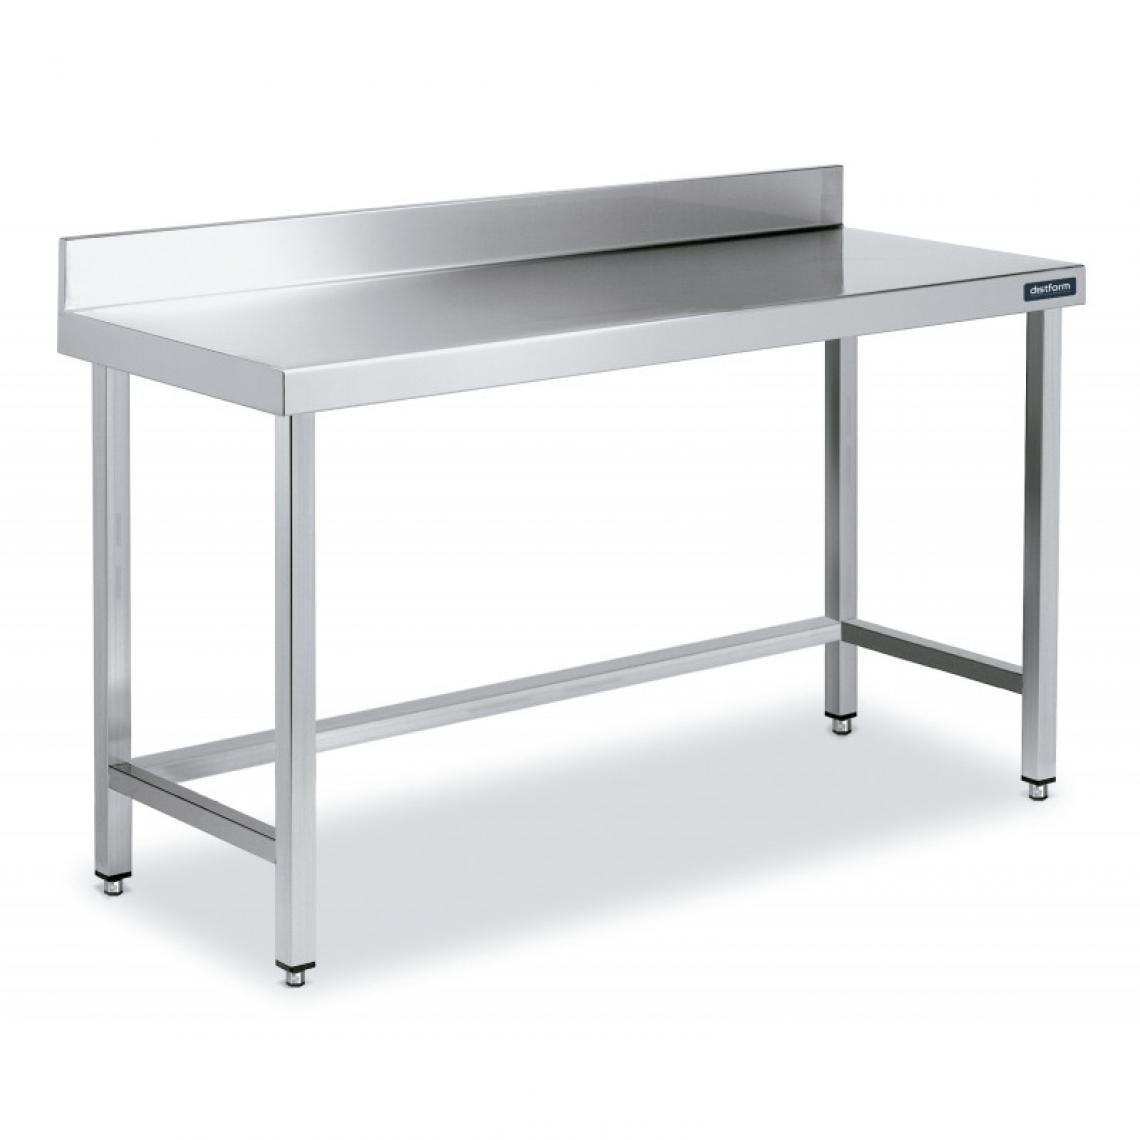 DISTFORM - Table Inox de Travail avec Dosseret Gamme 900 - Distform - Acier inoxydable2200x900 - Tables à manger